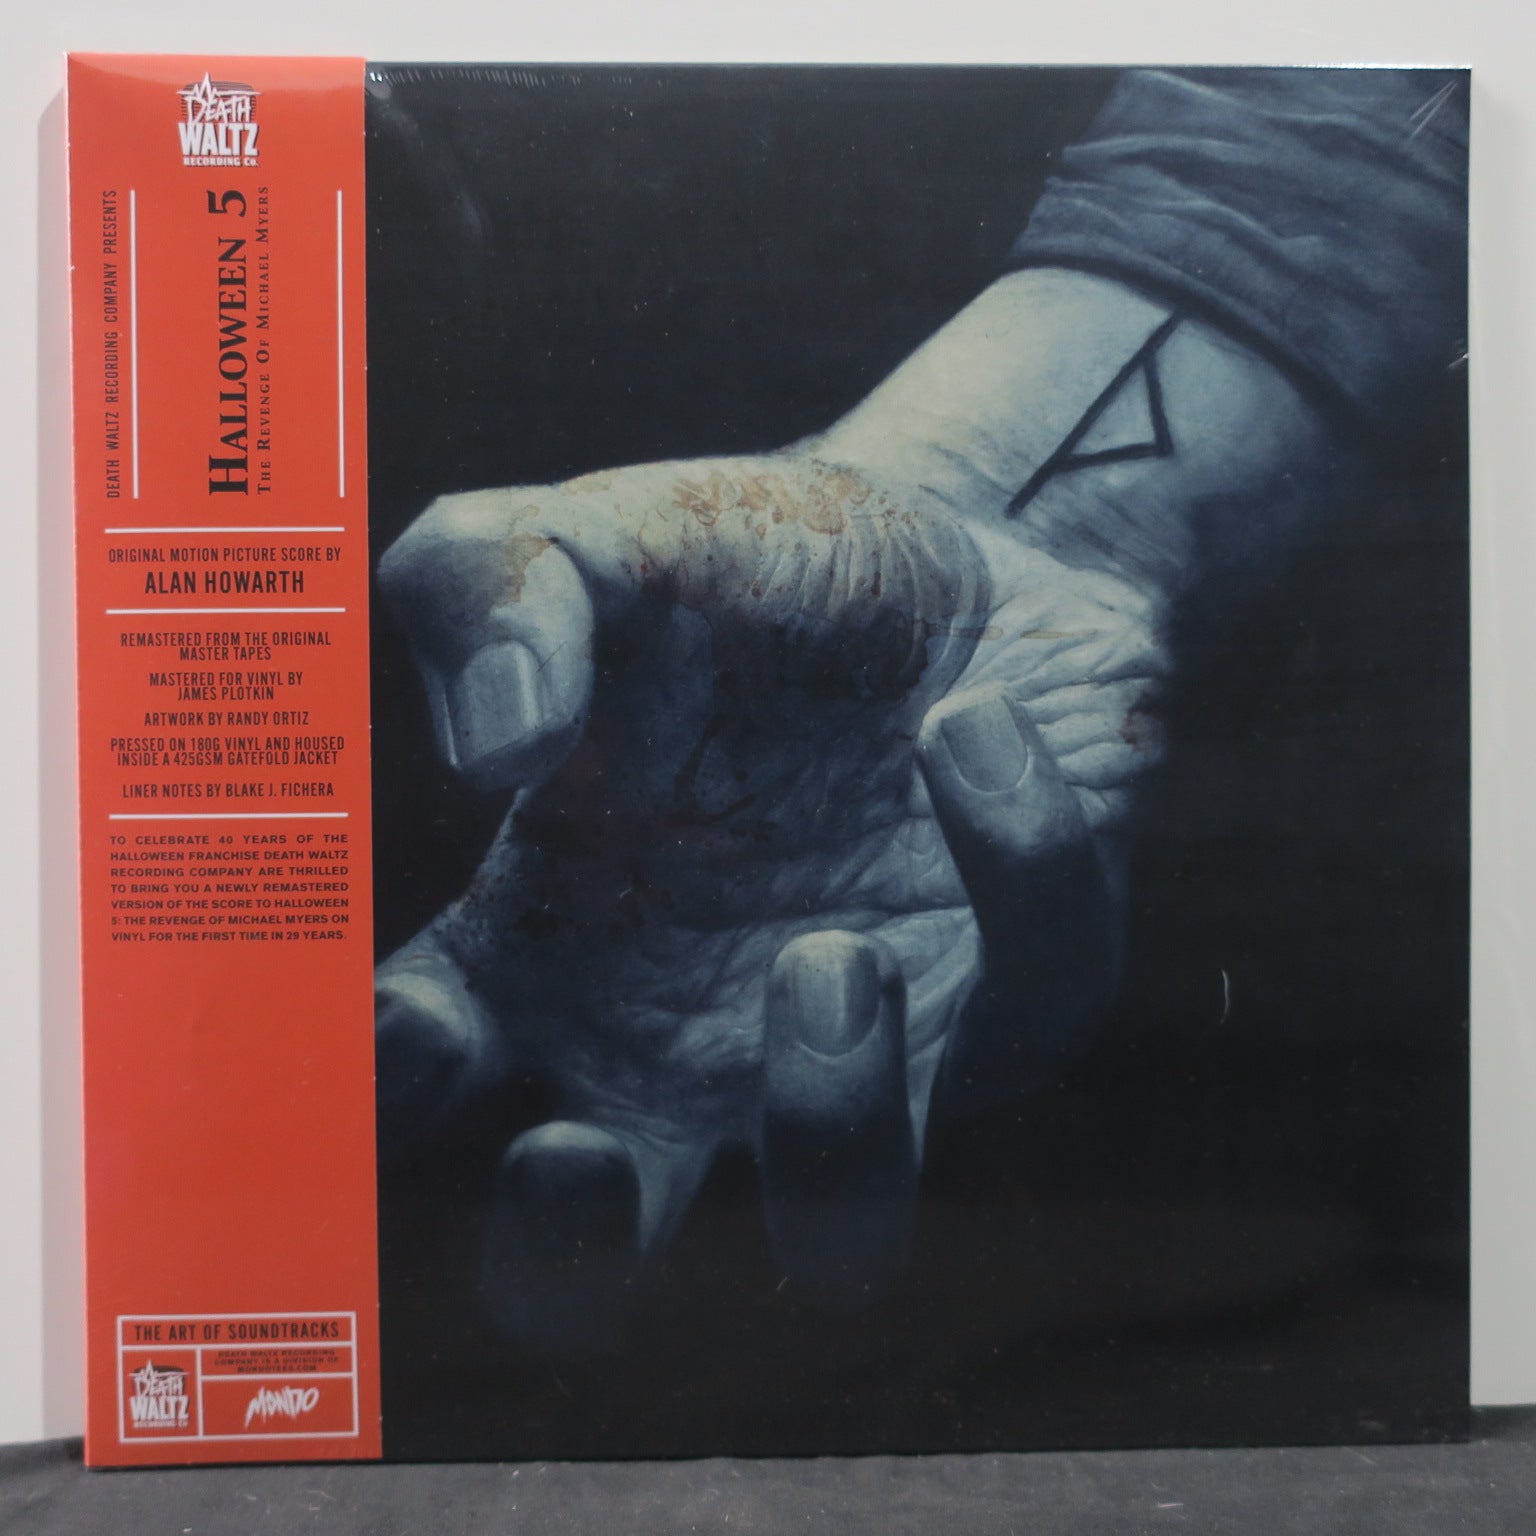 'HALLOWEEN 5: REVENGE OF MICHAEL MYERS' Soundtrack 180g ORANGE Vinyl L